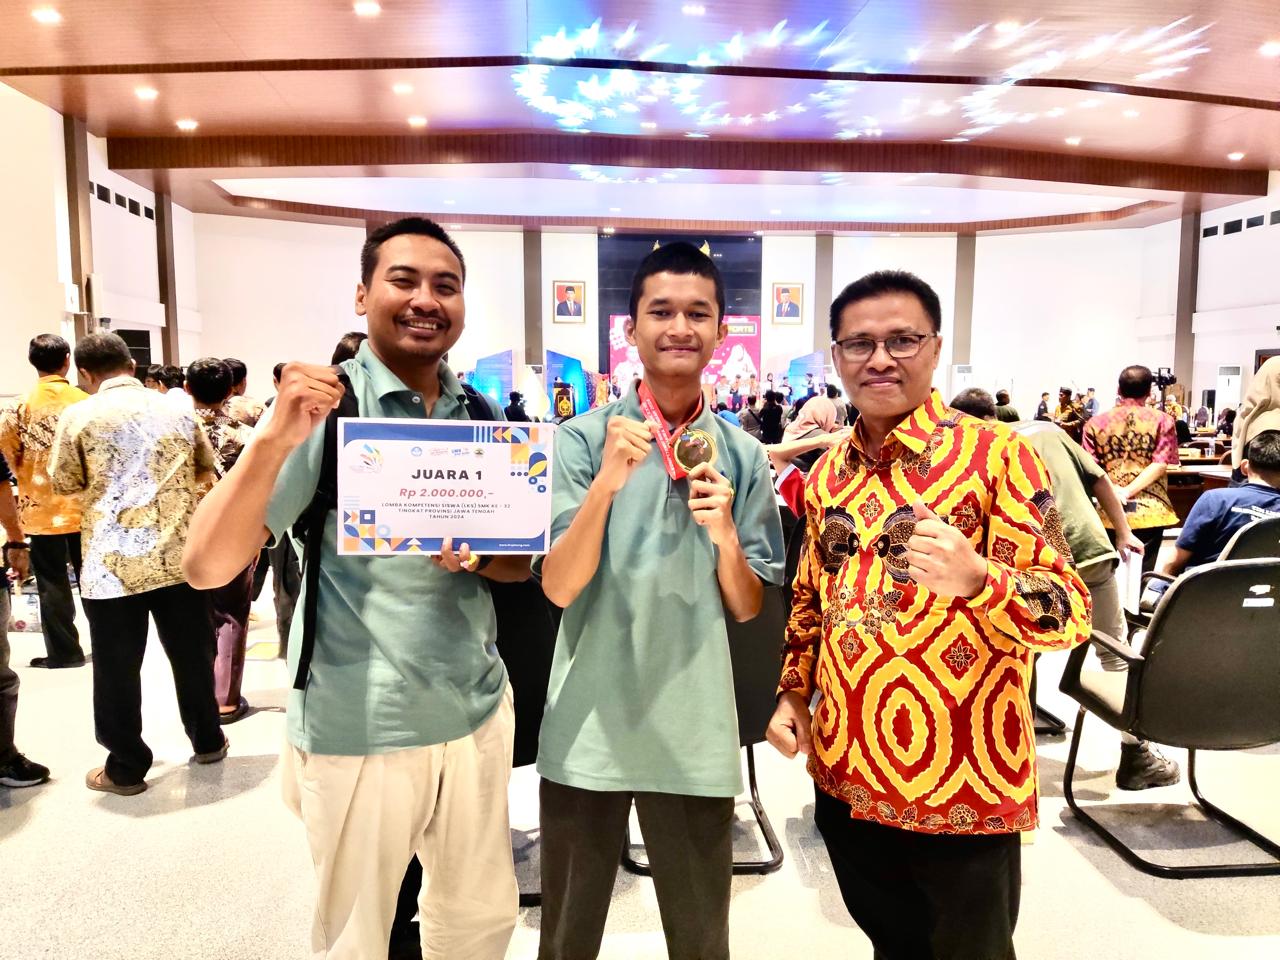 Siswa SMKN 1 Adiwerna Kabupaten Tegal Juara I Lomba Kompetensi Siswa SMK Tingkat Jawa Tengah